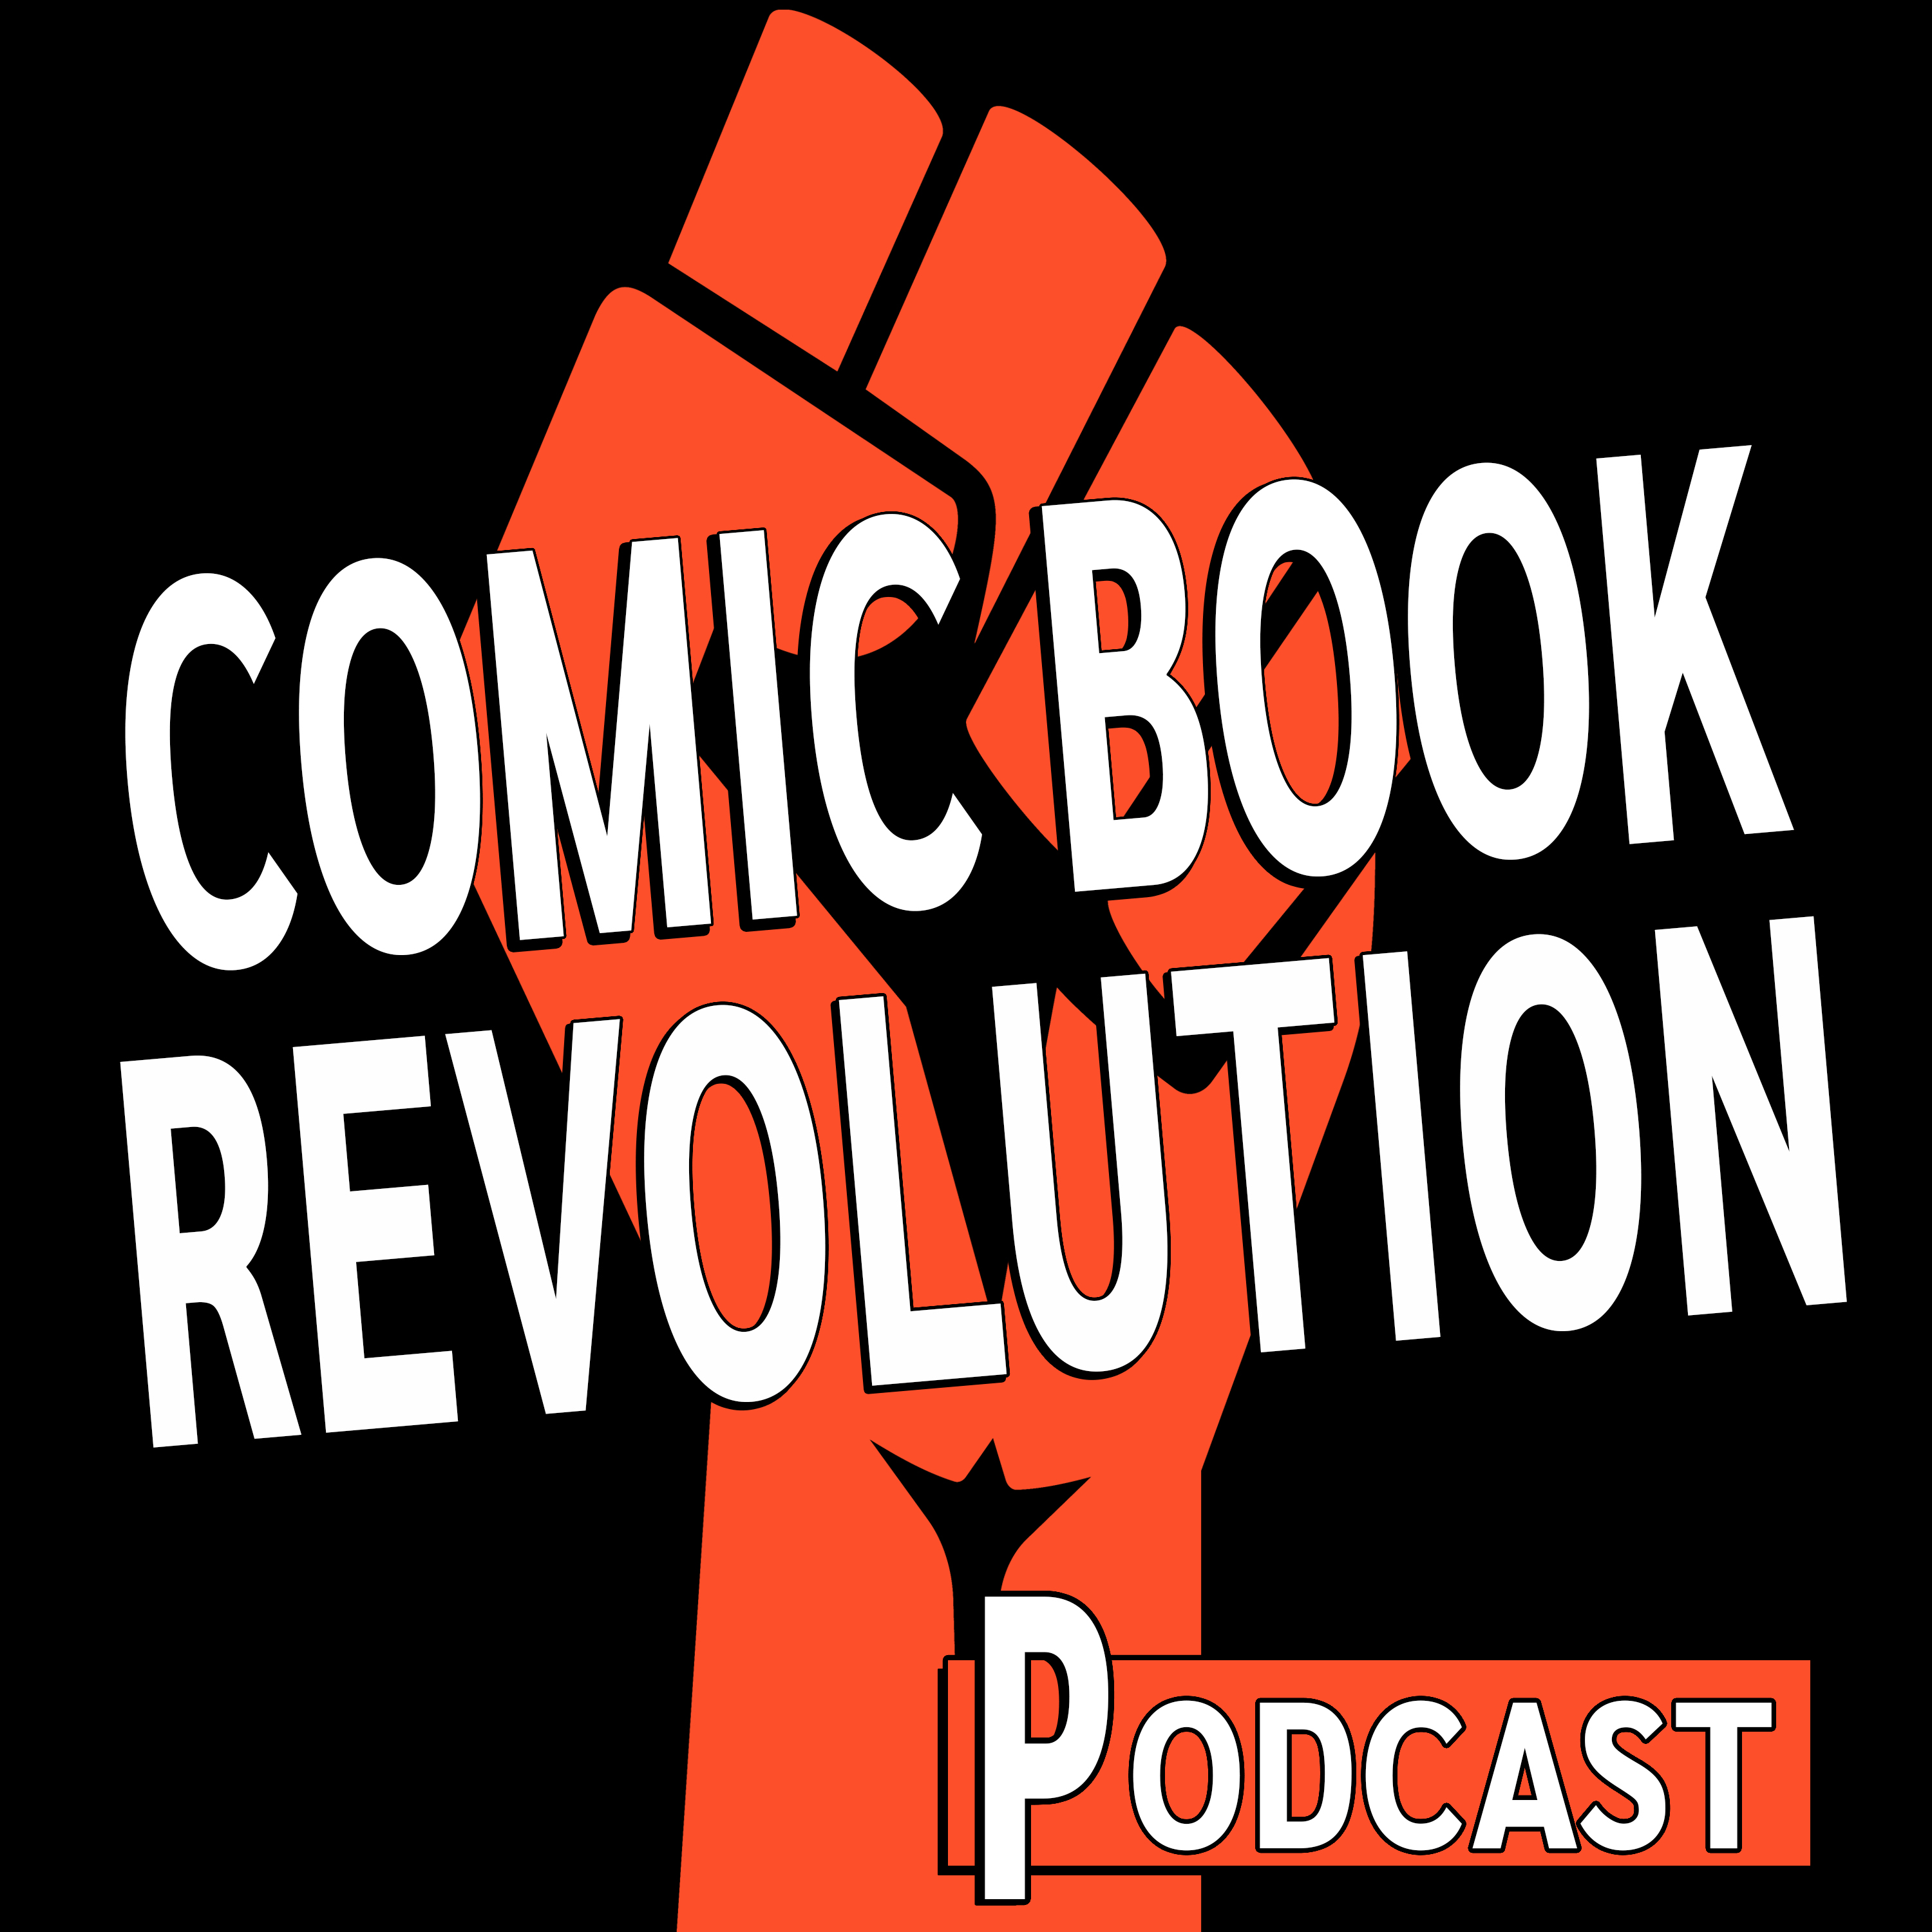 Comic Book Revolution Podcast Episode 07